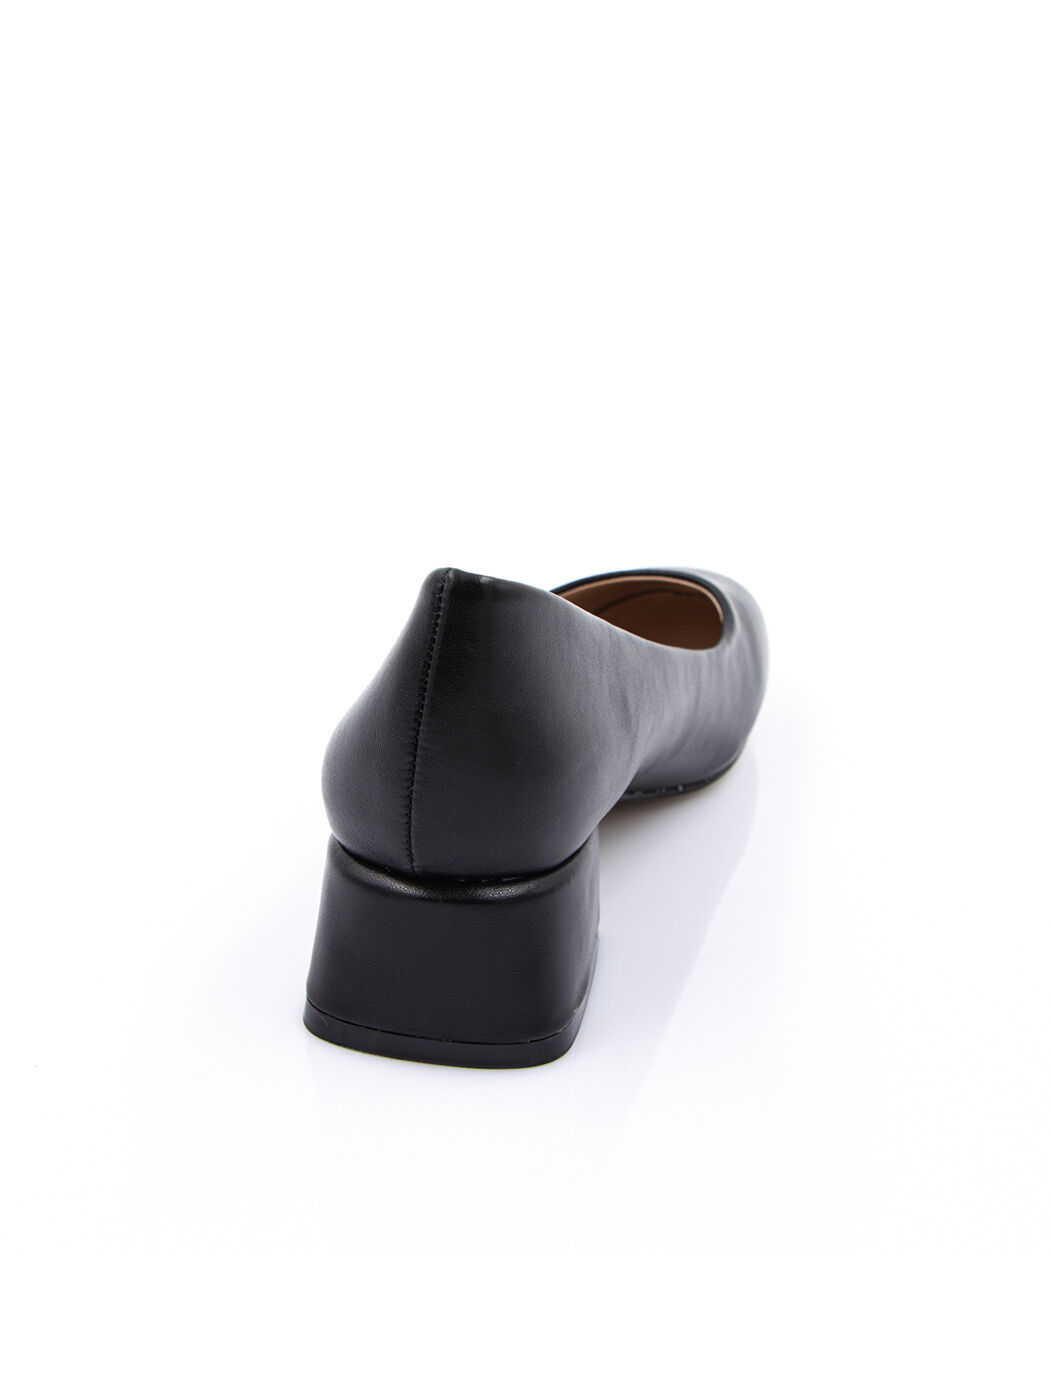 Туфли женские черные экокожа каблук устойчивый демисезон от производителя 5M вид 1